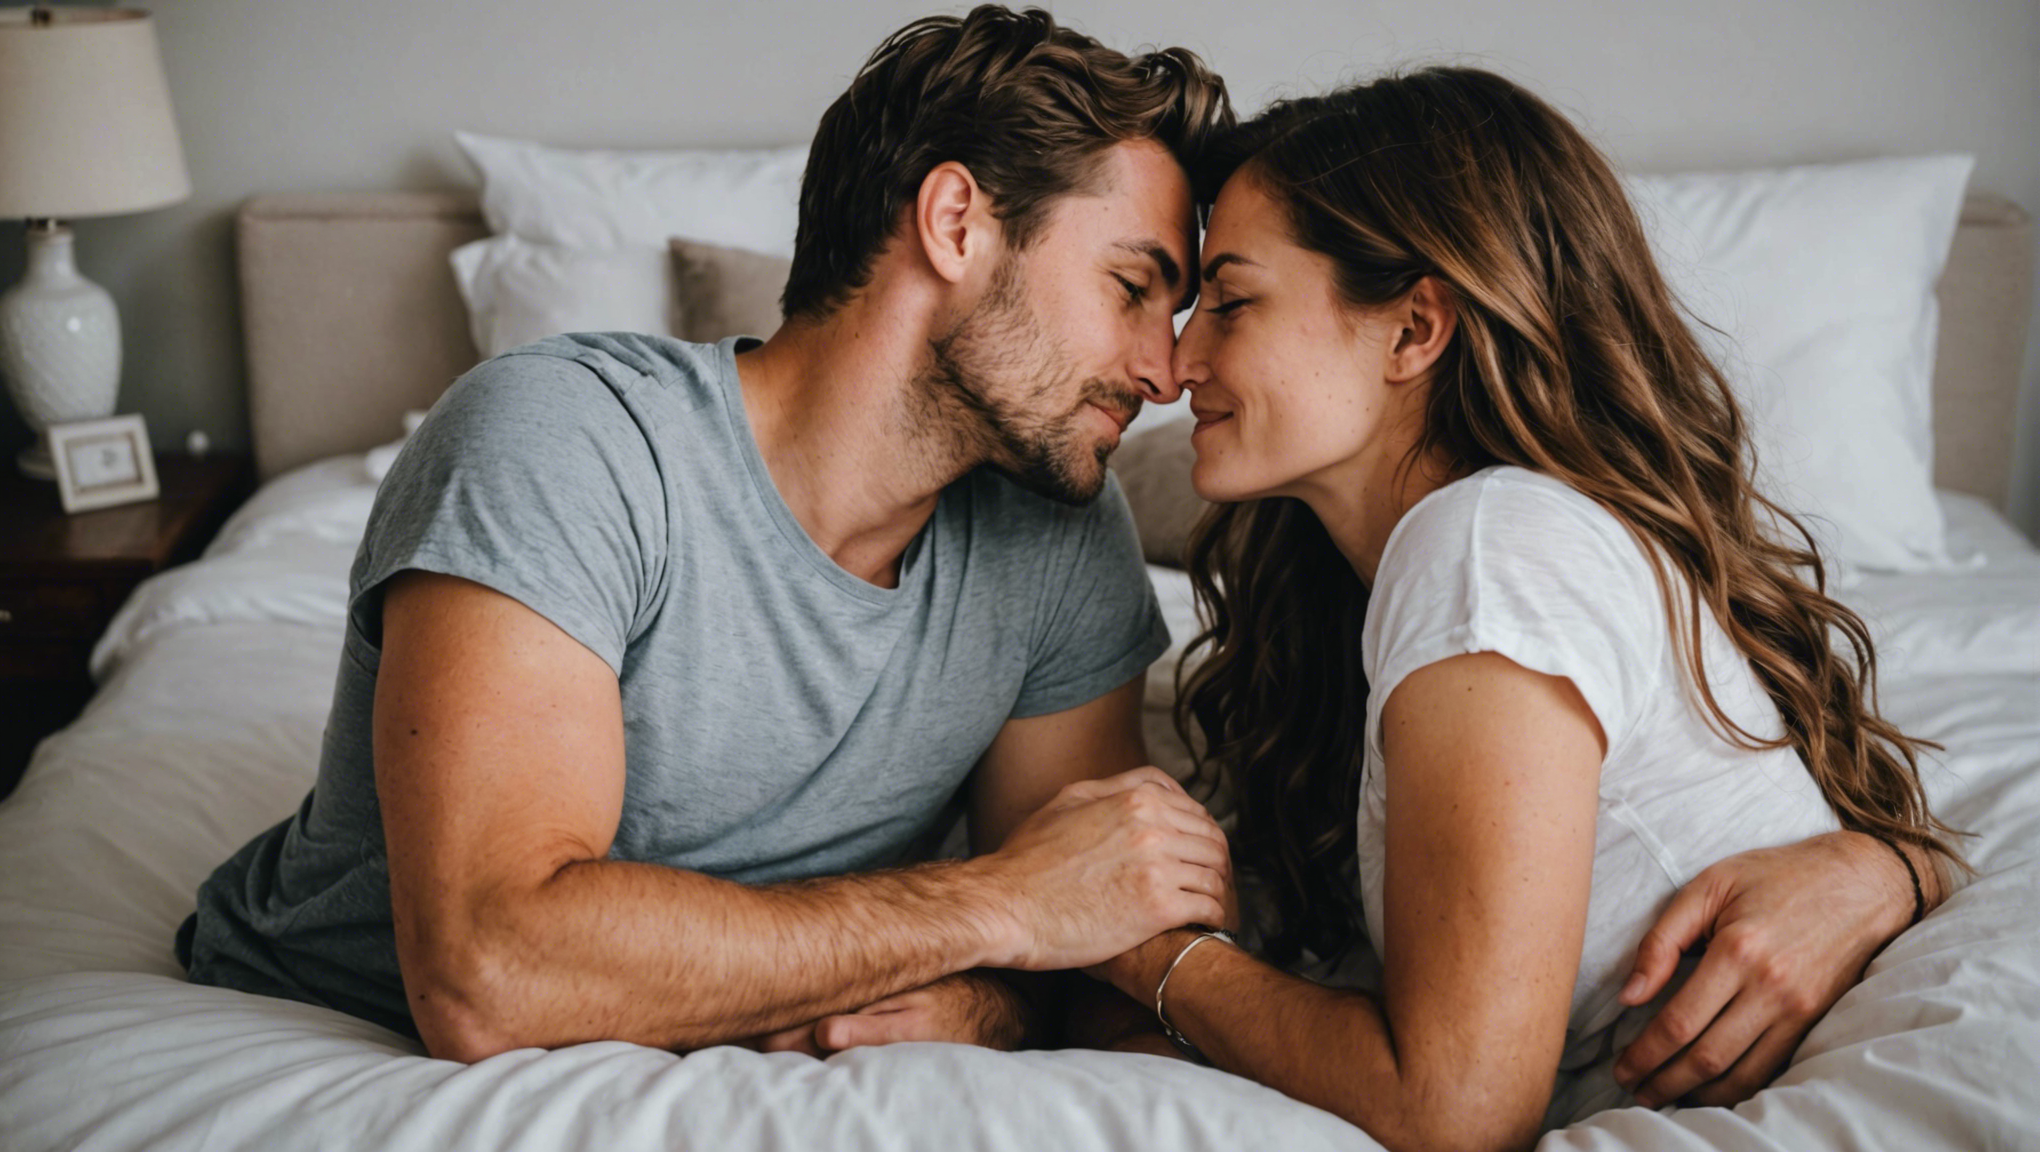 découvrez nos meilleurs conseils pour réussir une photo de couple amoureux dans un lit. astuces, poses et éclairages pour des images pleines de tendresse et de complicité.